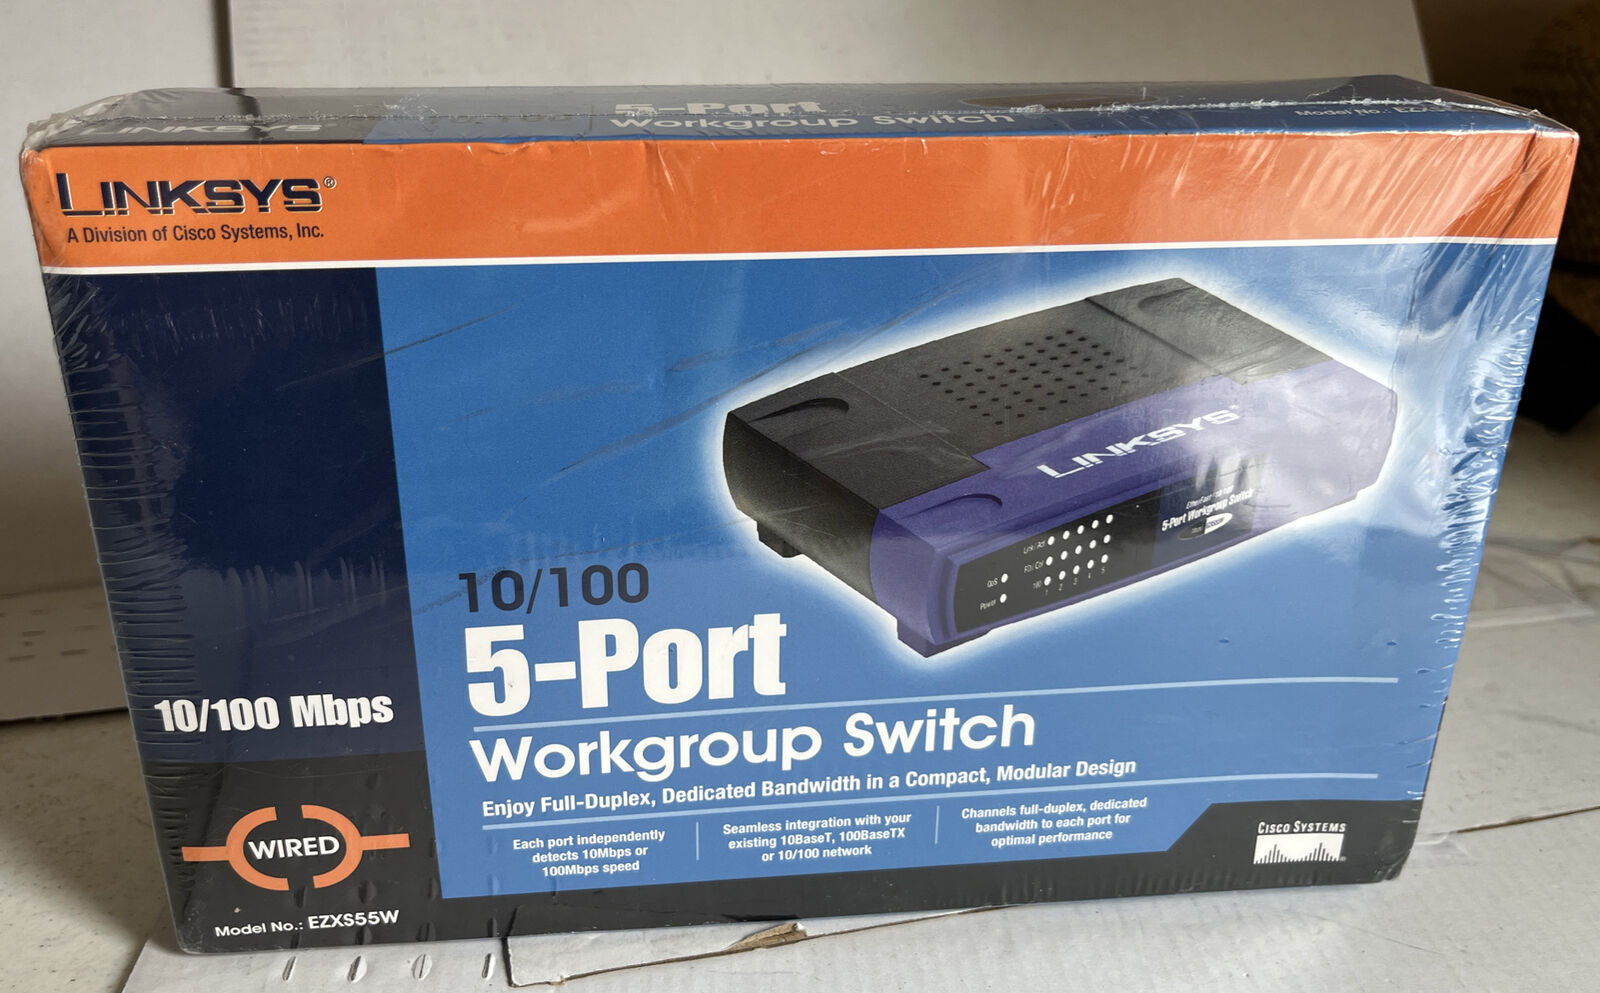 Linksys EZXS55W 5-Port Workgroup Switch 10/00 Mbps New